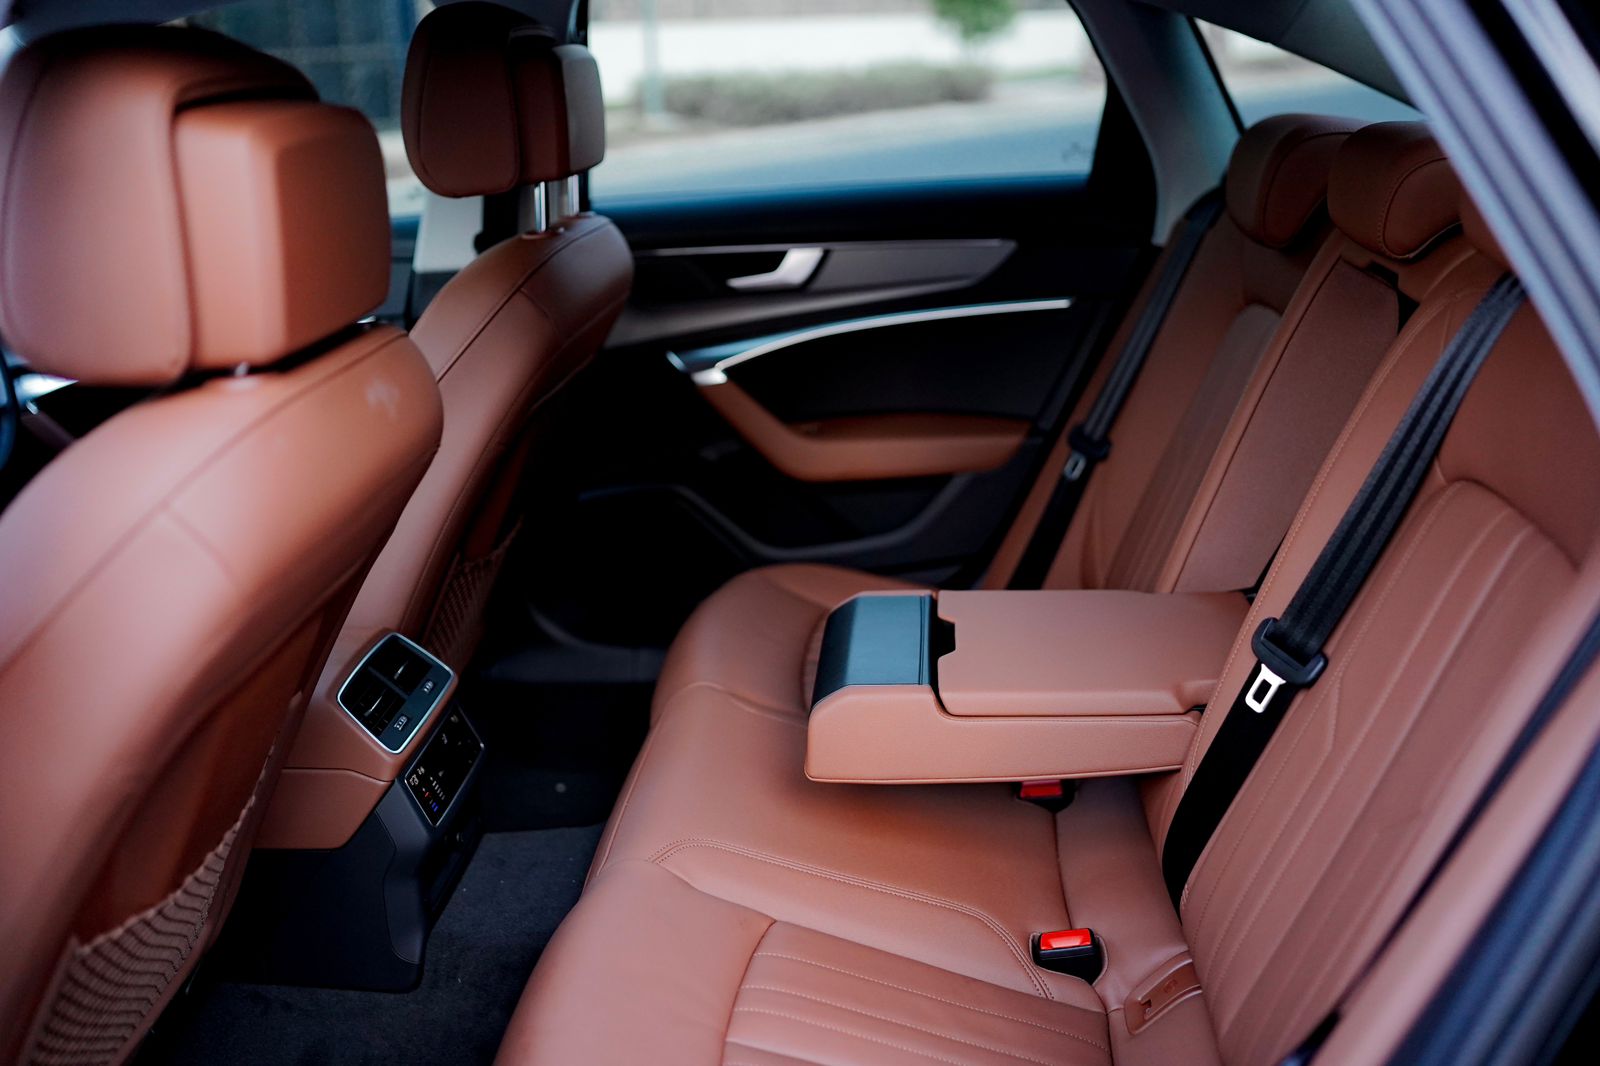 Audi A6 interior - Seats